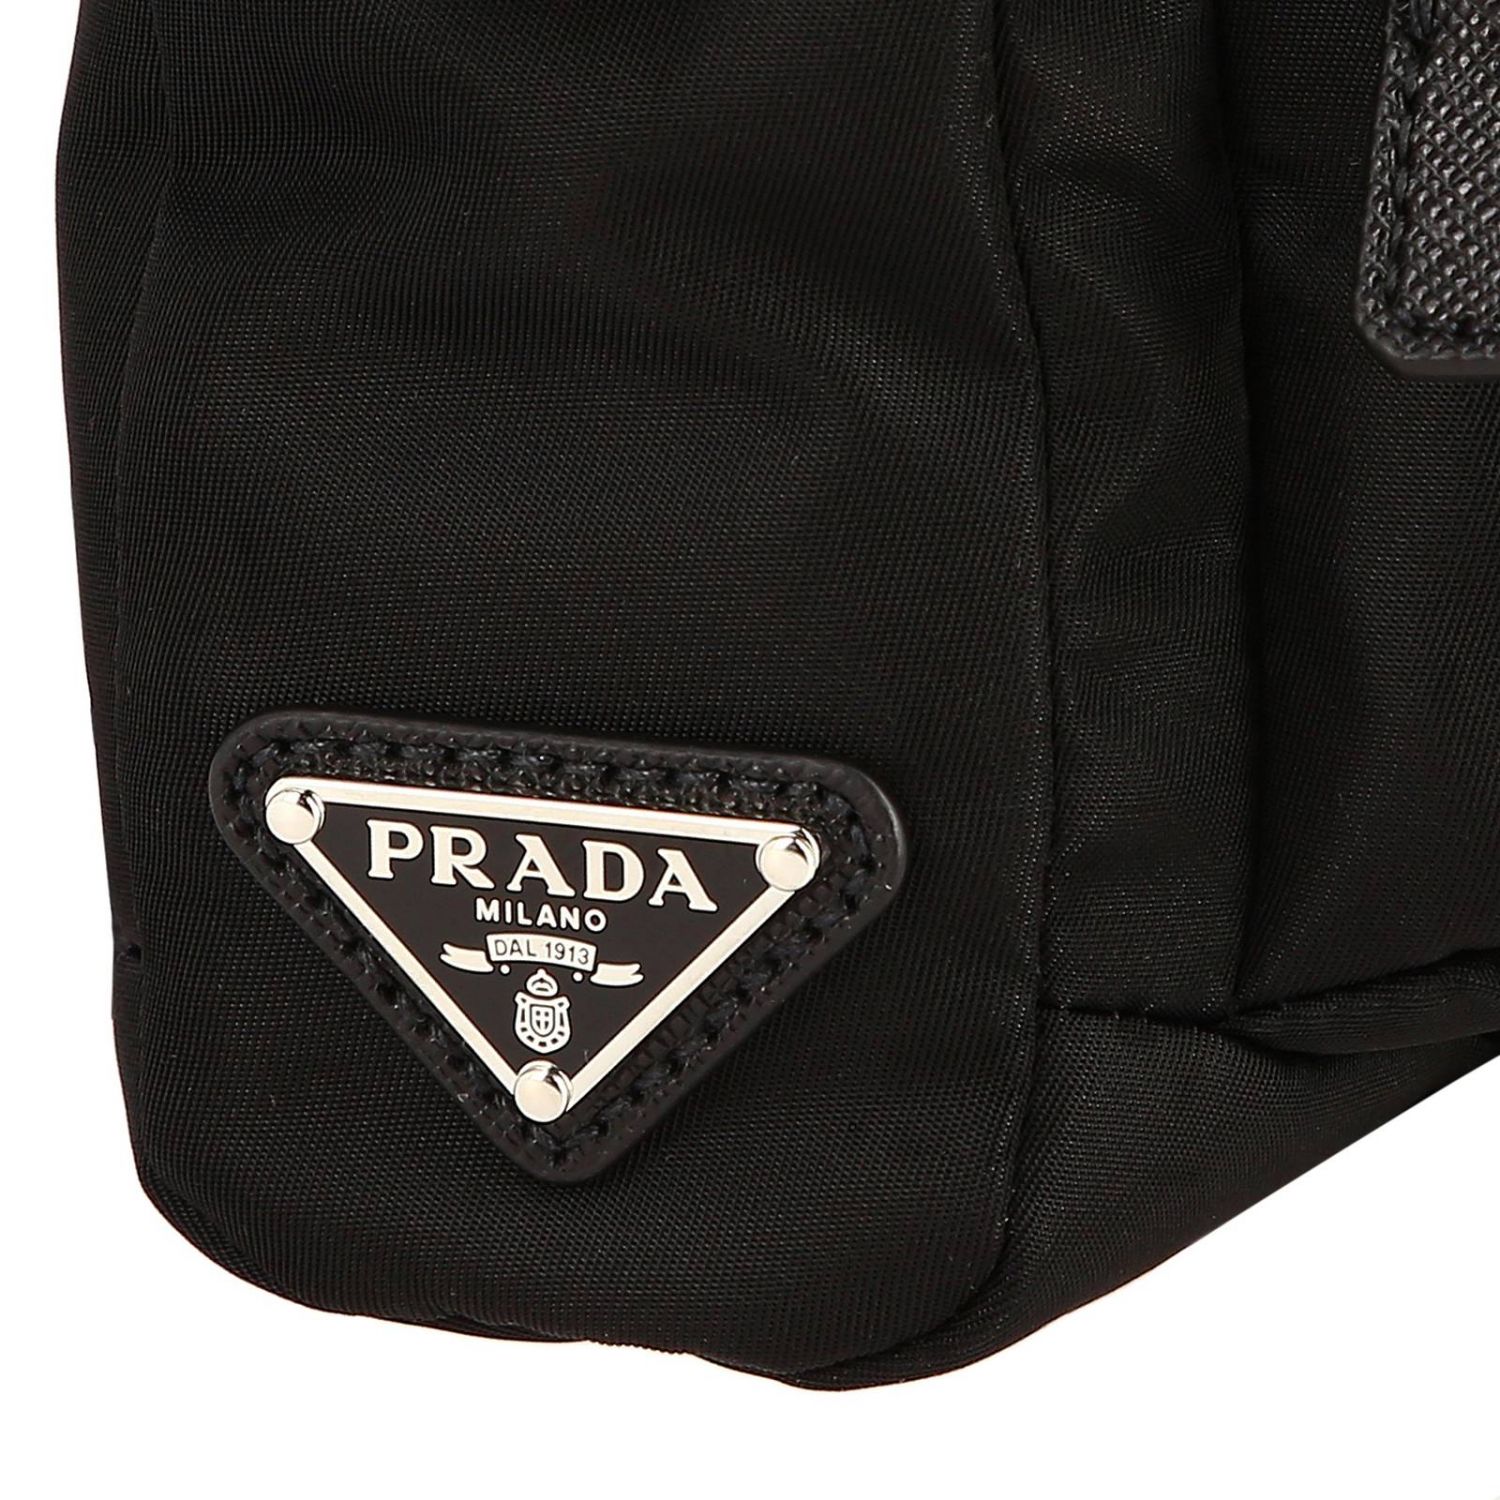 PRADA: Bandolier Camera Nylon Bag with triangular logo | Shoulder Bag ...